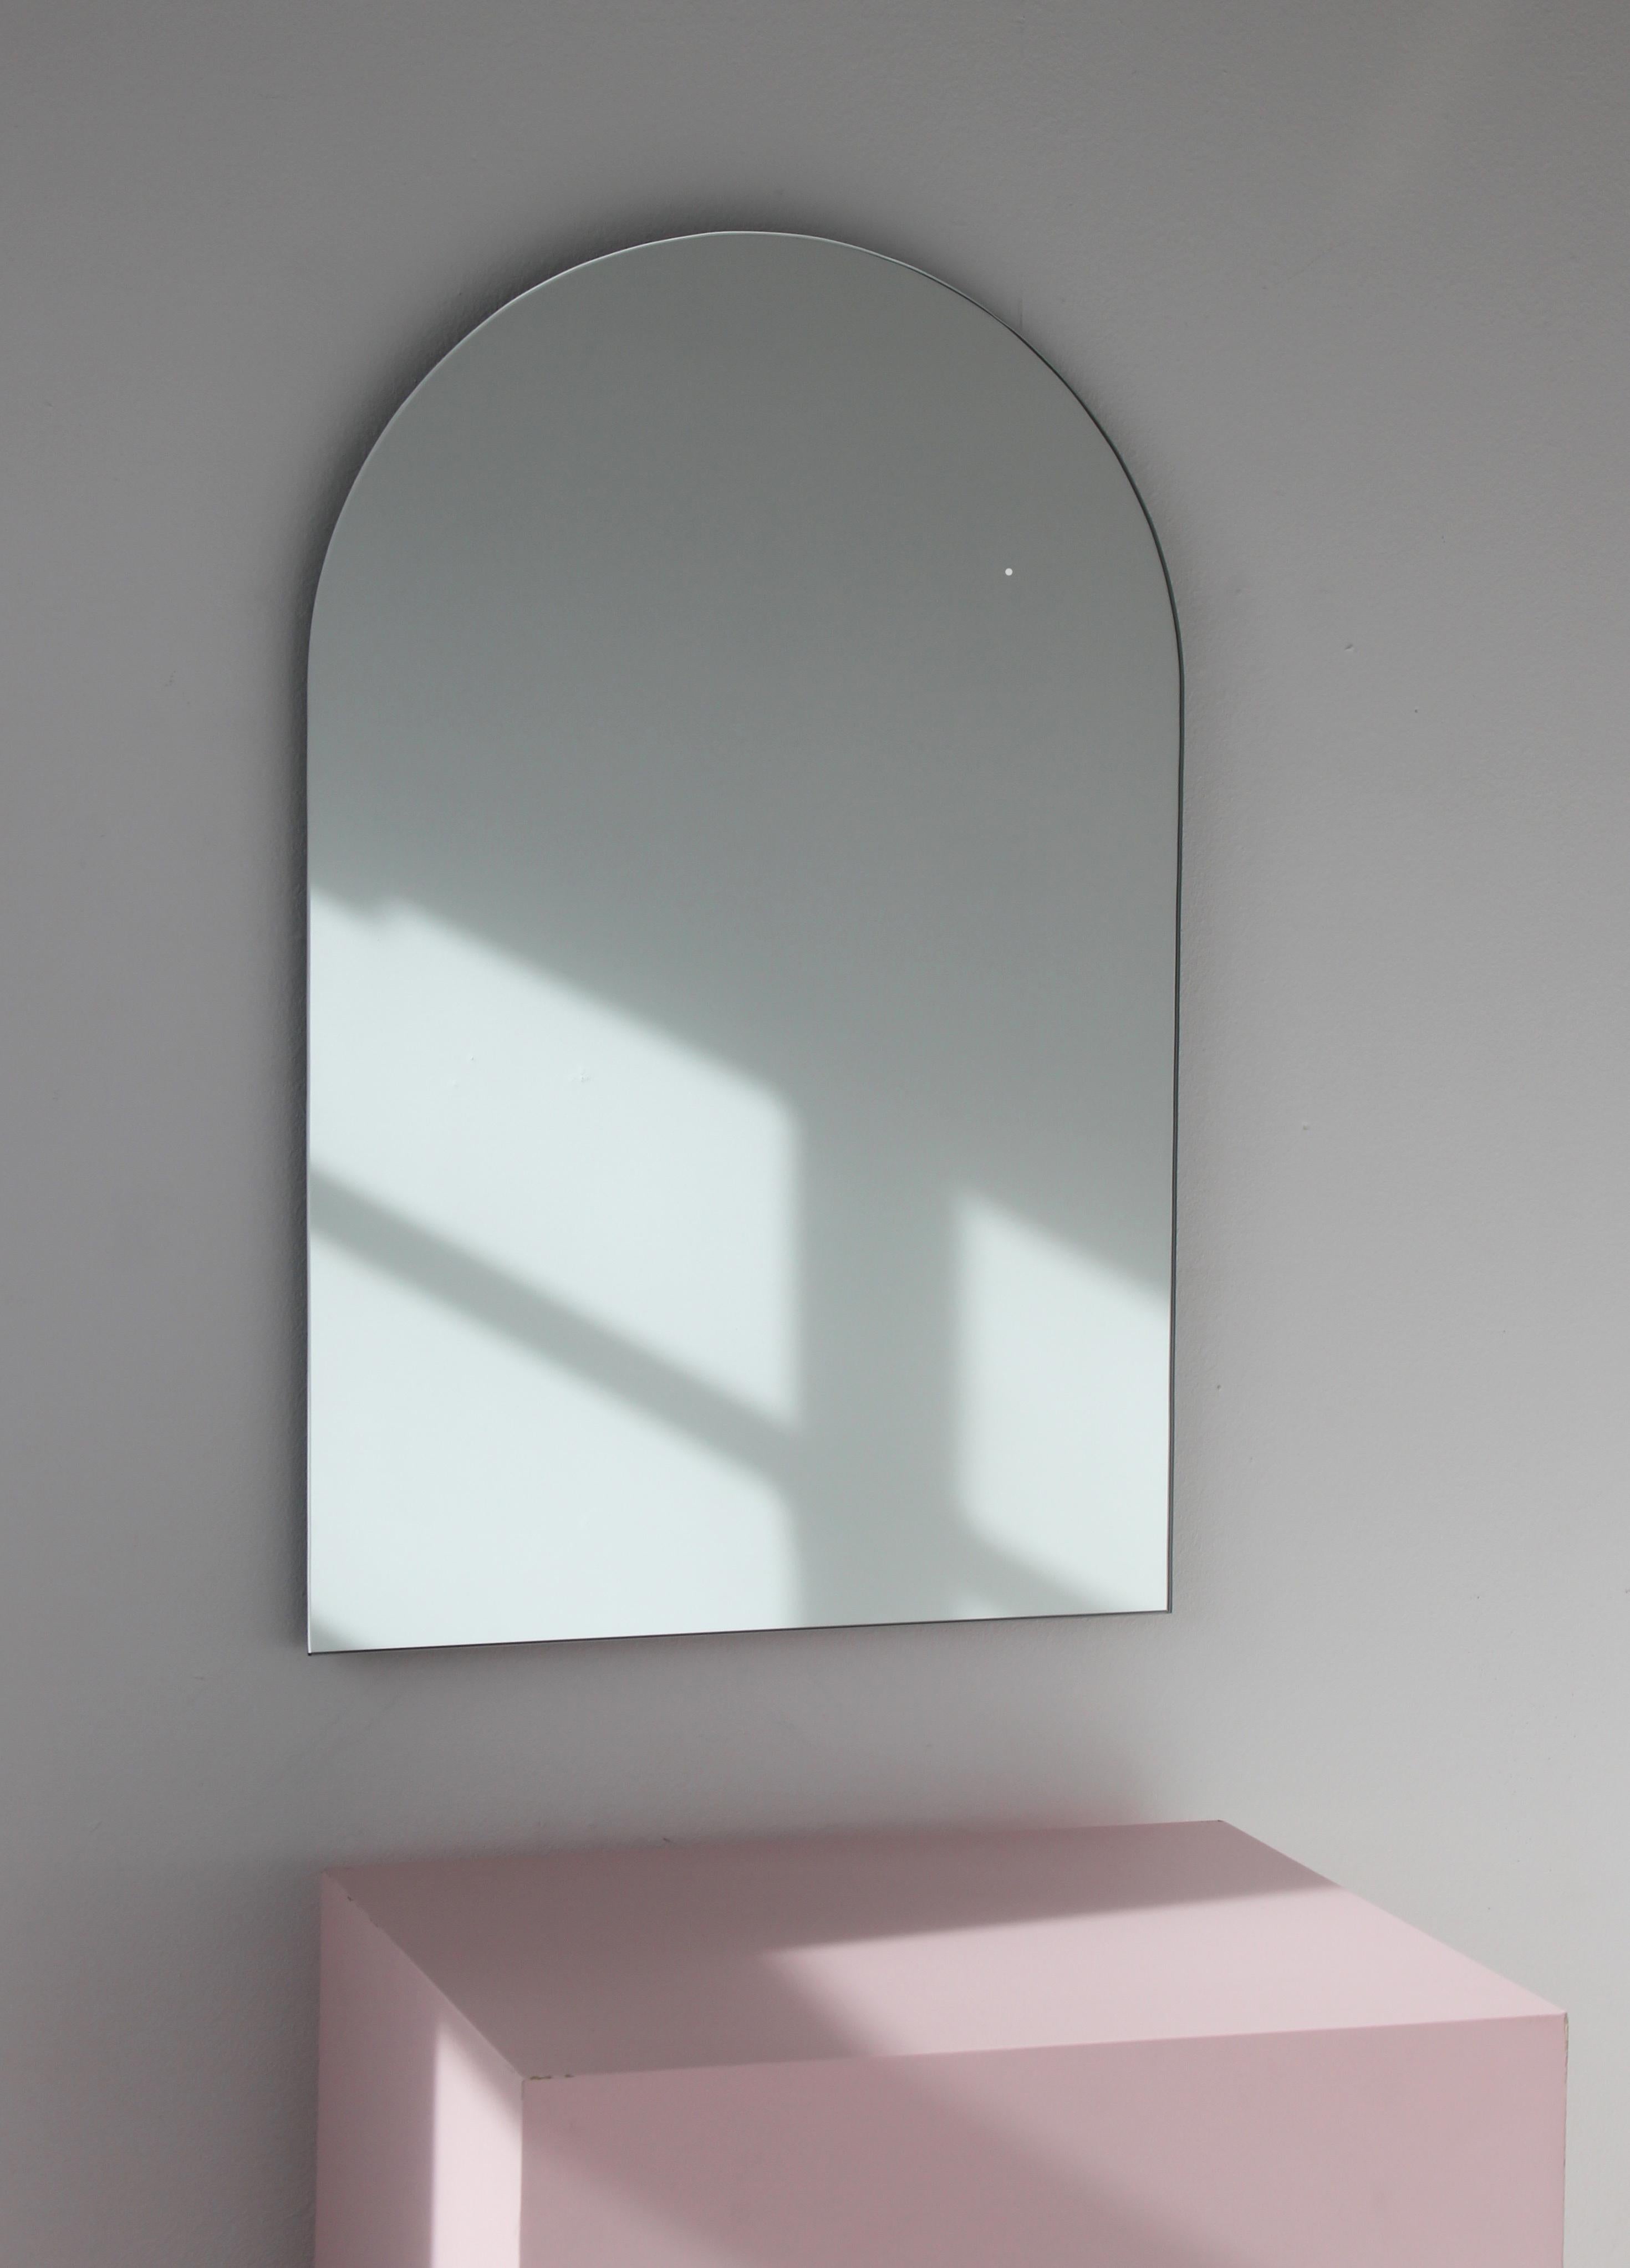 Minimalistischer gewölbter rahmenloser Spiegel. Hochwertiges Design, das dafür sorgt, dass der Spiegel perfekt parallel zur Wand steht. Entworfen und hergestellt in London, UK.

Ausgestattet mit professionellen Platten, die im eingebauten Zustand